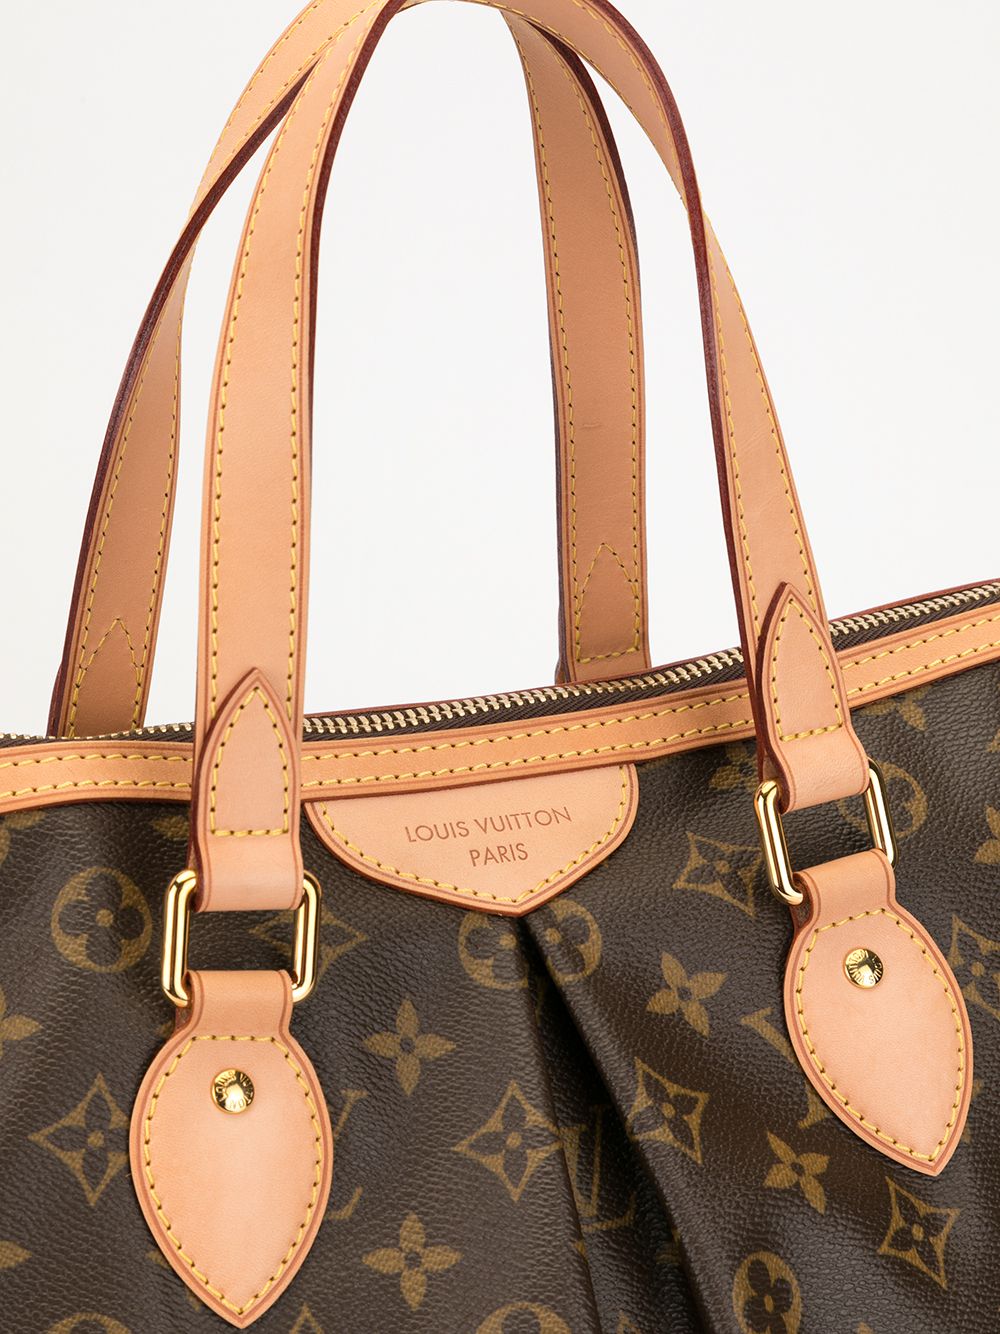 La borsa più piccola al mondo venduta per 63 mila euro: è un clone Louis  Vuitton